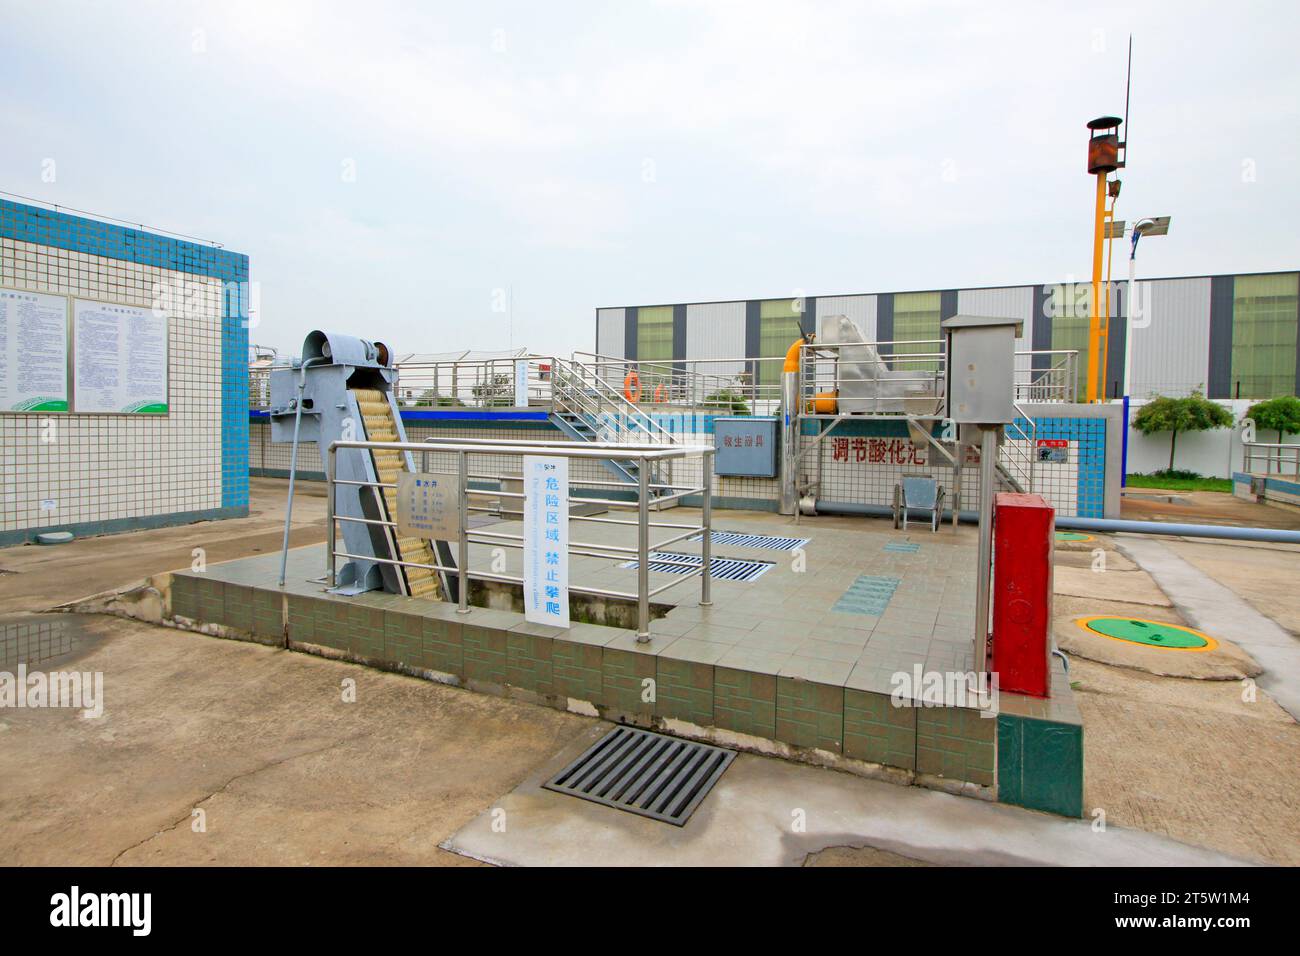 Contea di Luannan - settembre 28: Impianto di trattamento delle acque reflue piscina di riutilizzo dell'acqua in mengniu Dairy Group co., Ltd, il 28 settembre 2015, contea luannana, hebei p Foto Stock